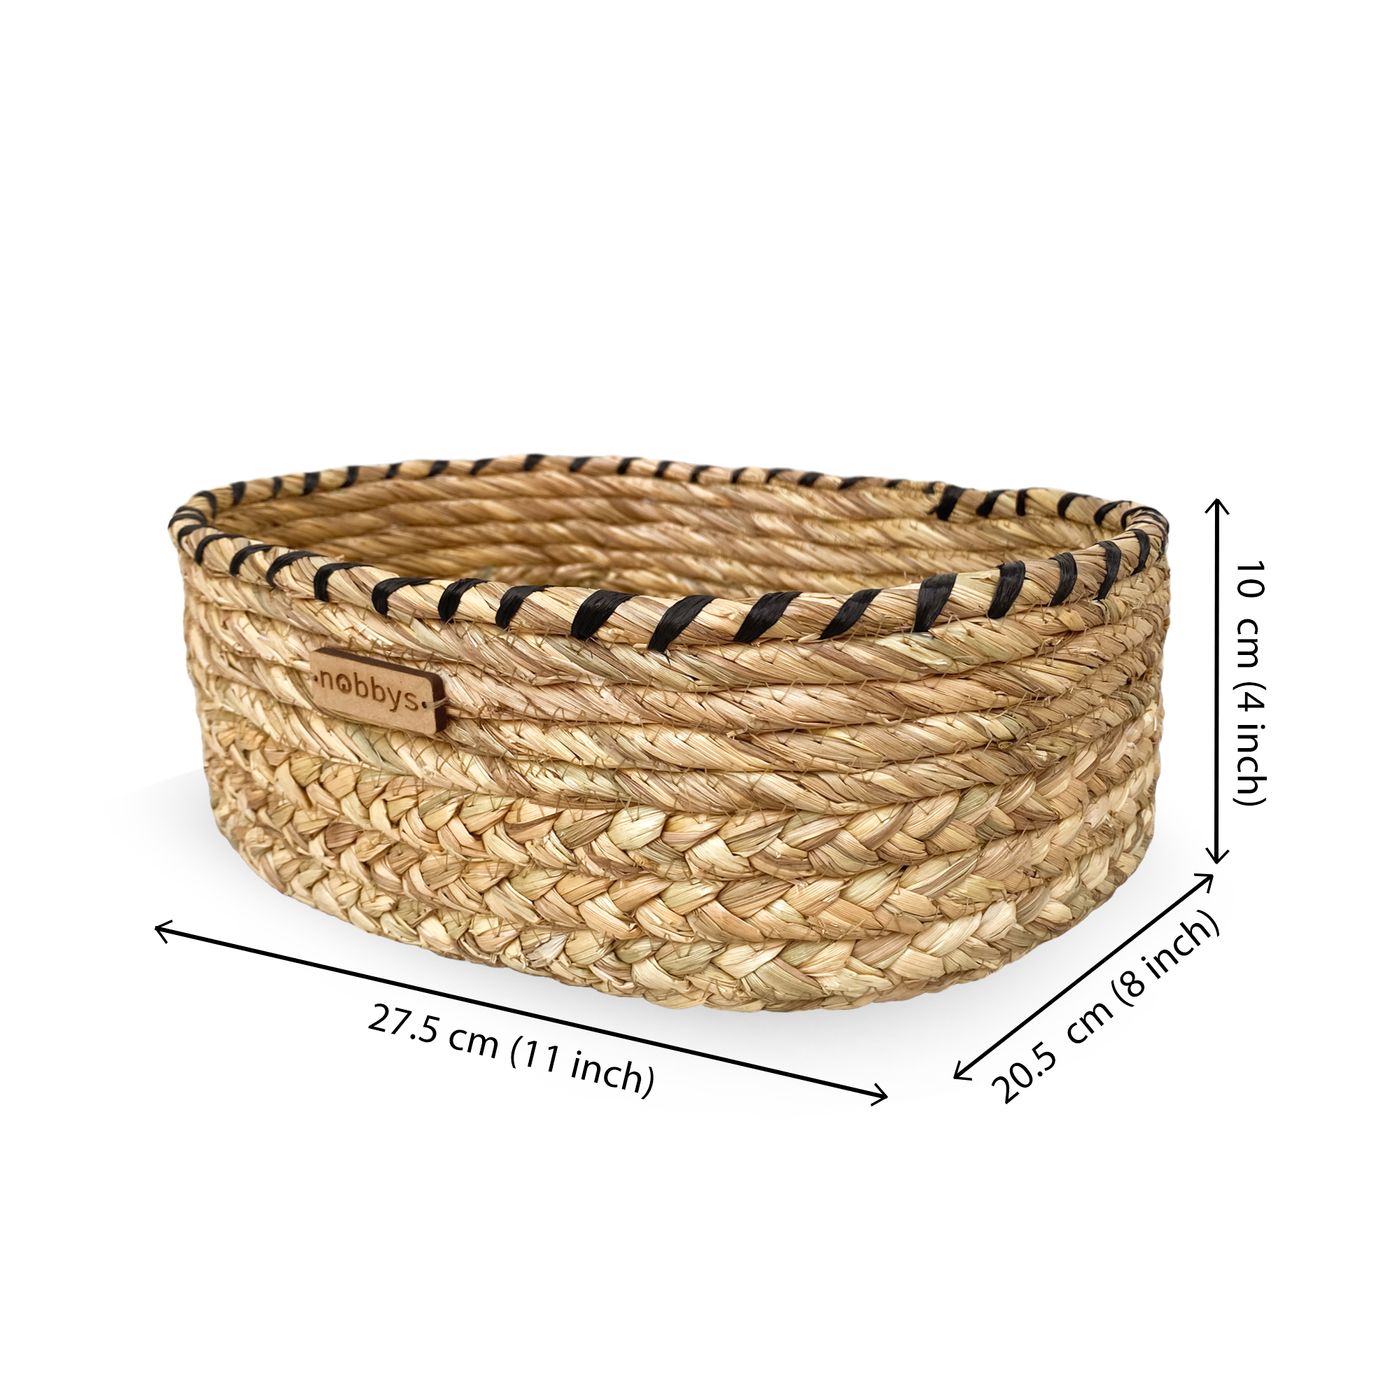 Oval Black Raffia Coiled Golden Grass Storage Basket (11